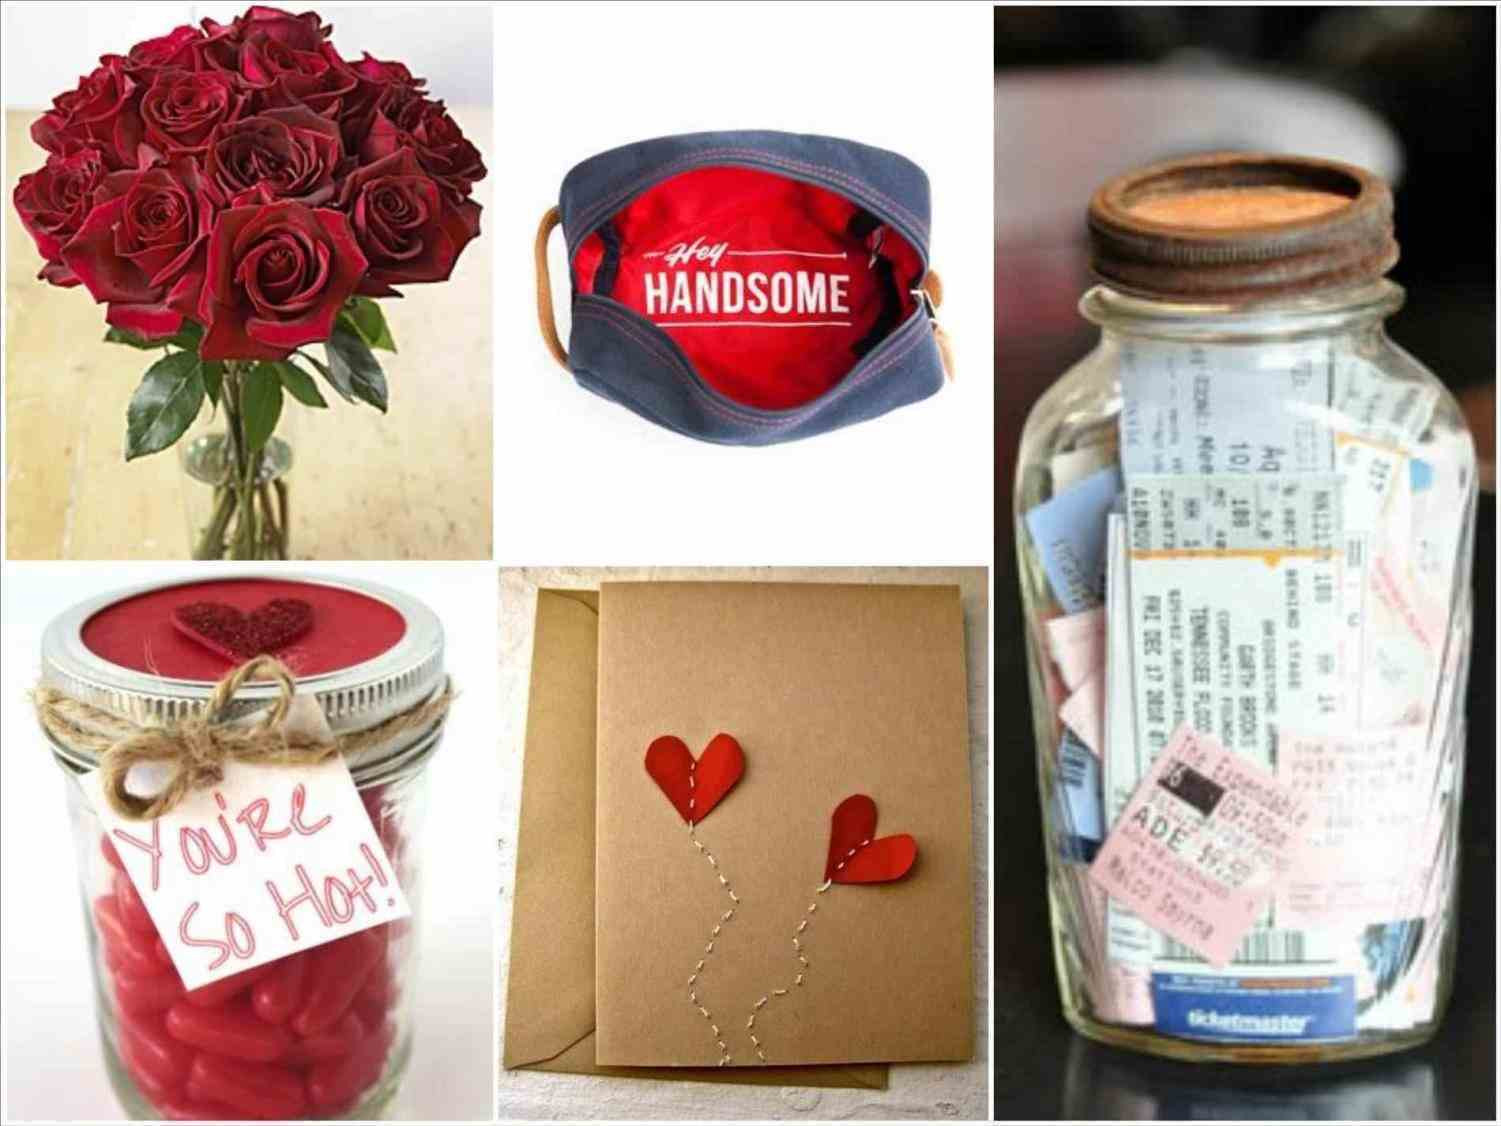 Best ideas about Boyfriend Gift Ideas Tumblr
. Save or Pin Gift boyfriend t ideas tumblr ideas for boyfriend in Now.